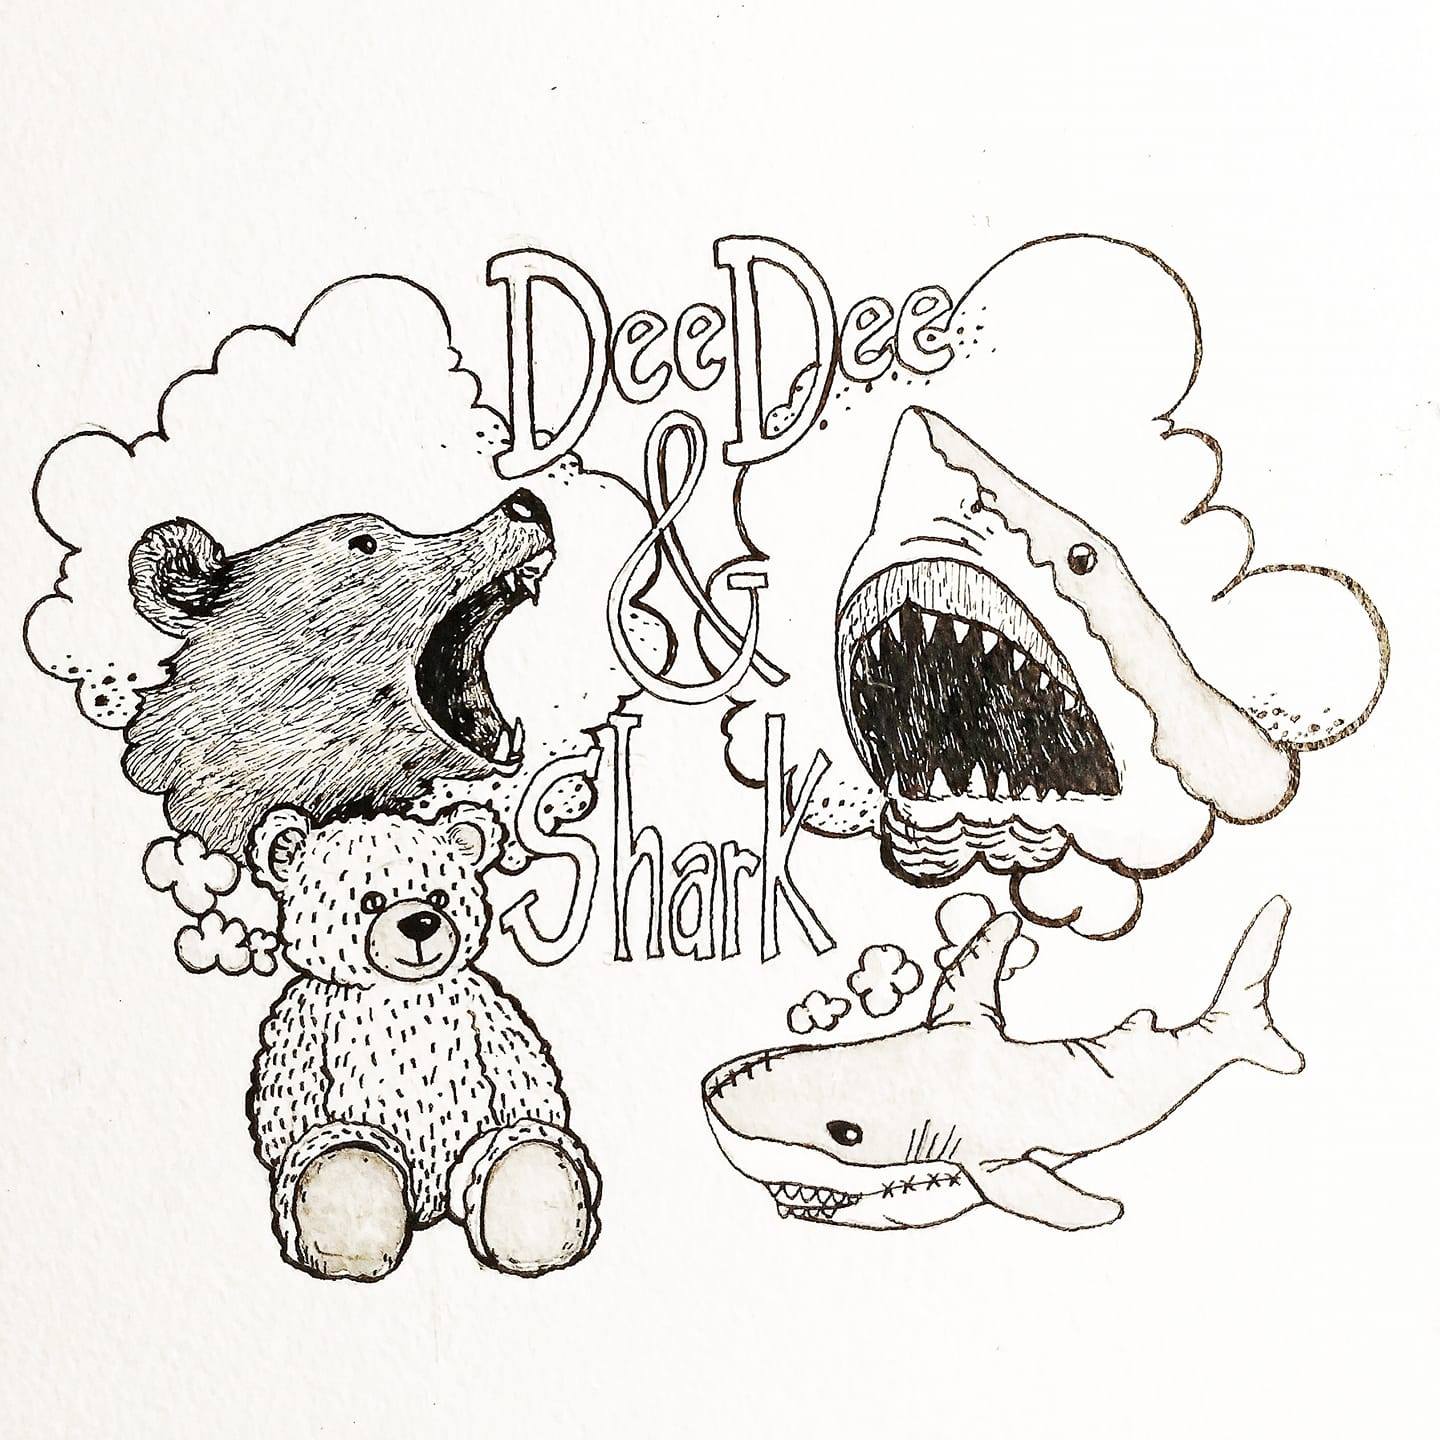 Deedee and Shark (Portland, OR)